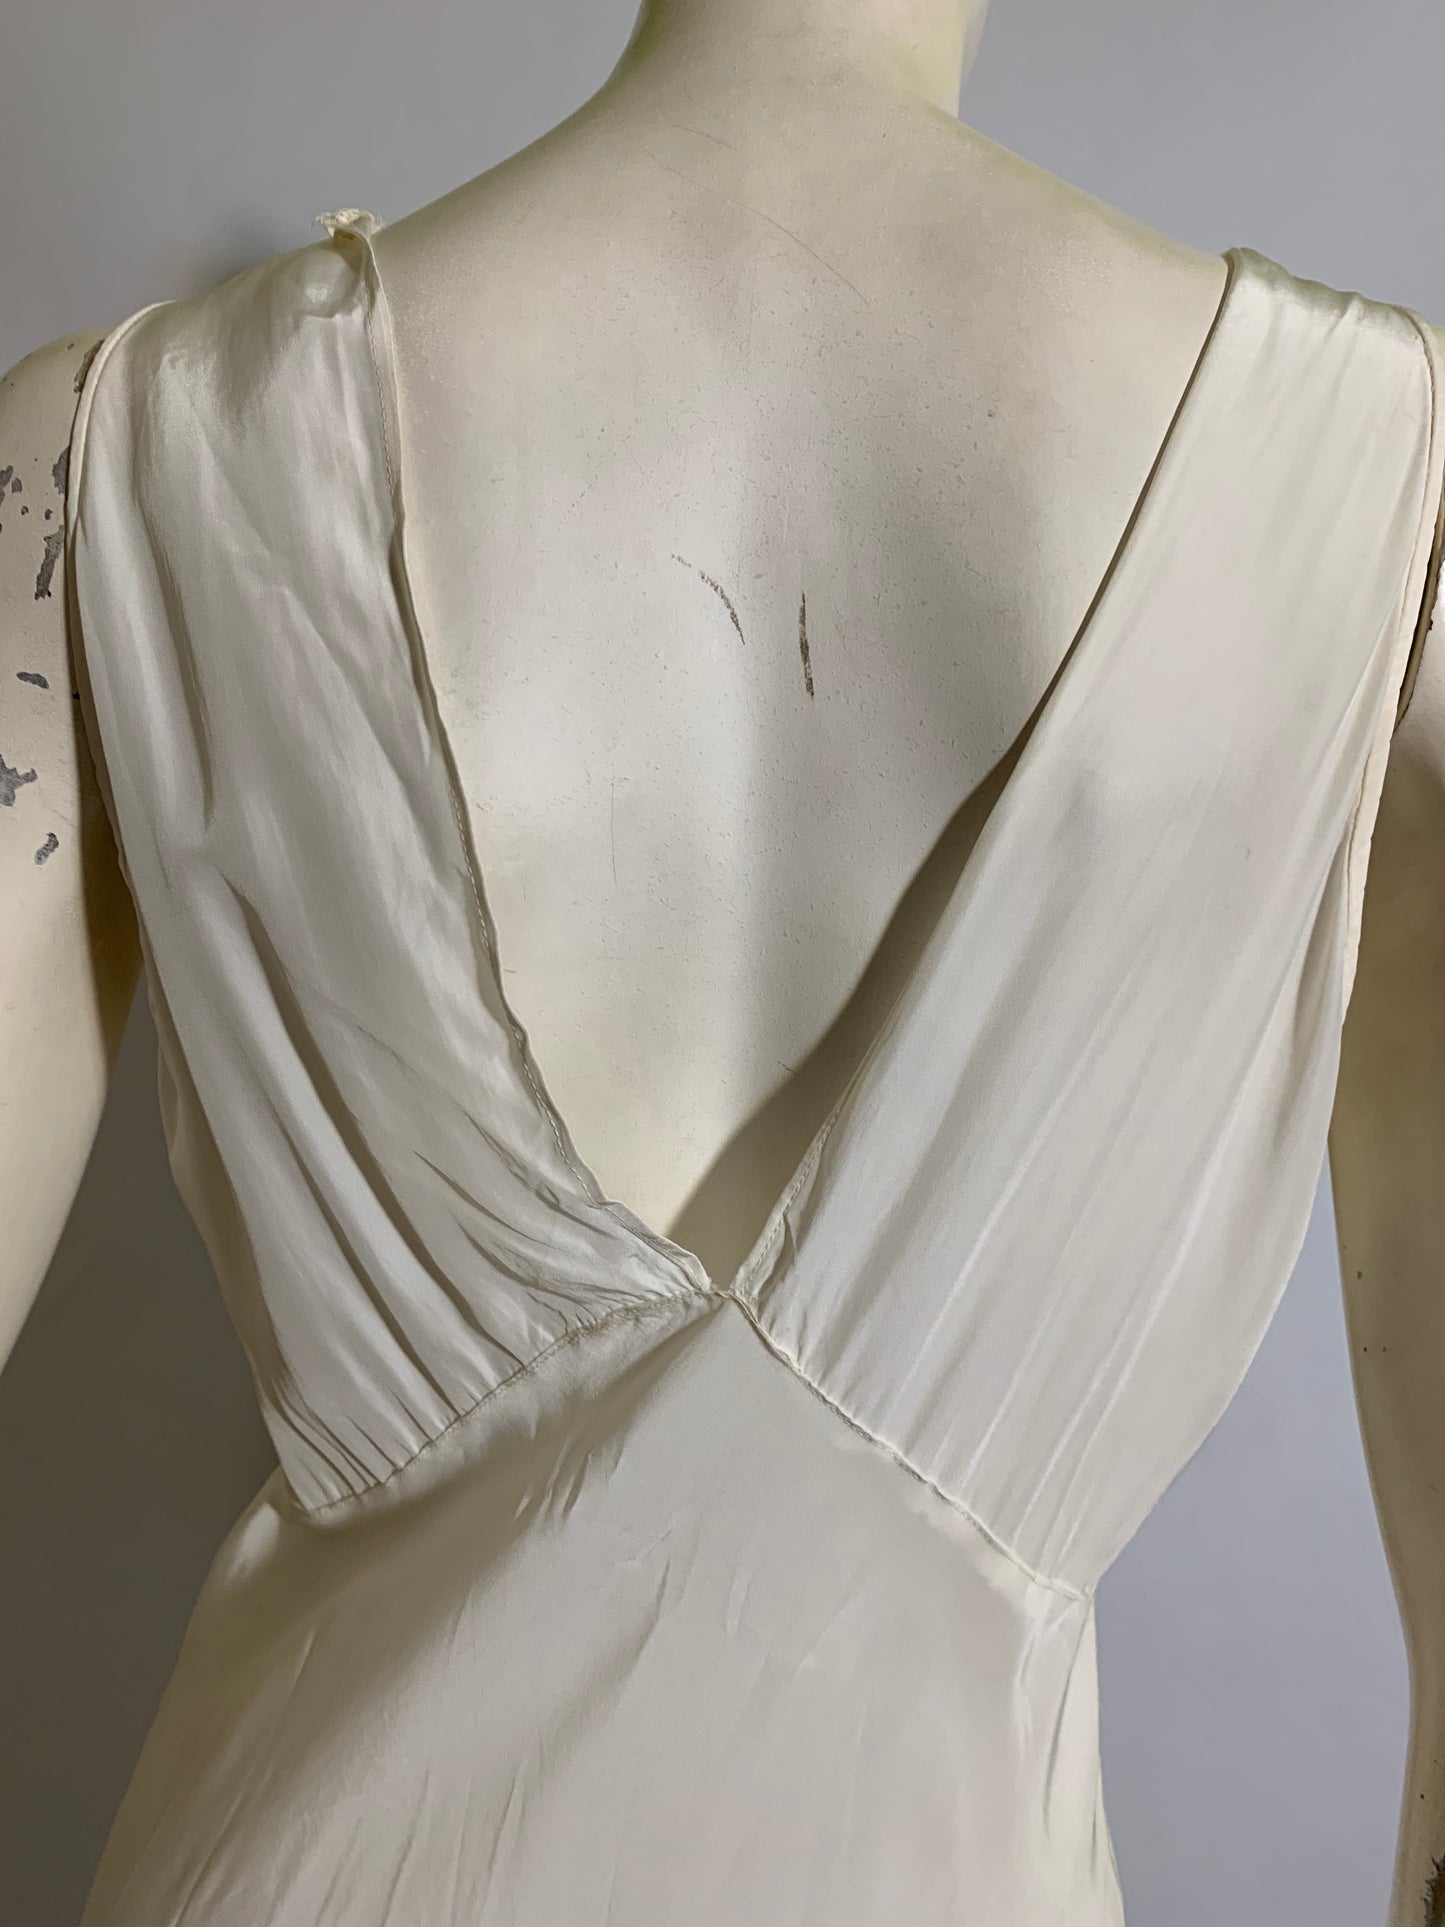 White Rayon Bias Cut Nightgown circa 1930s